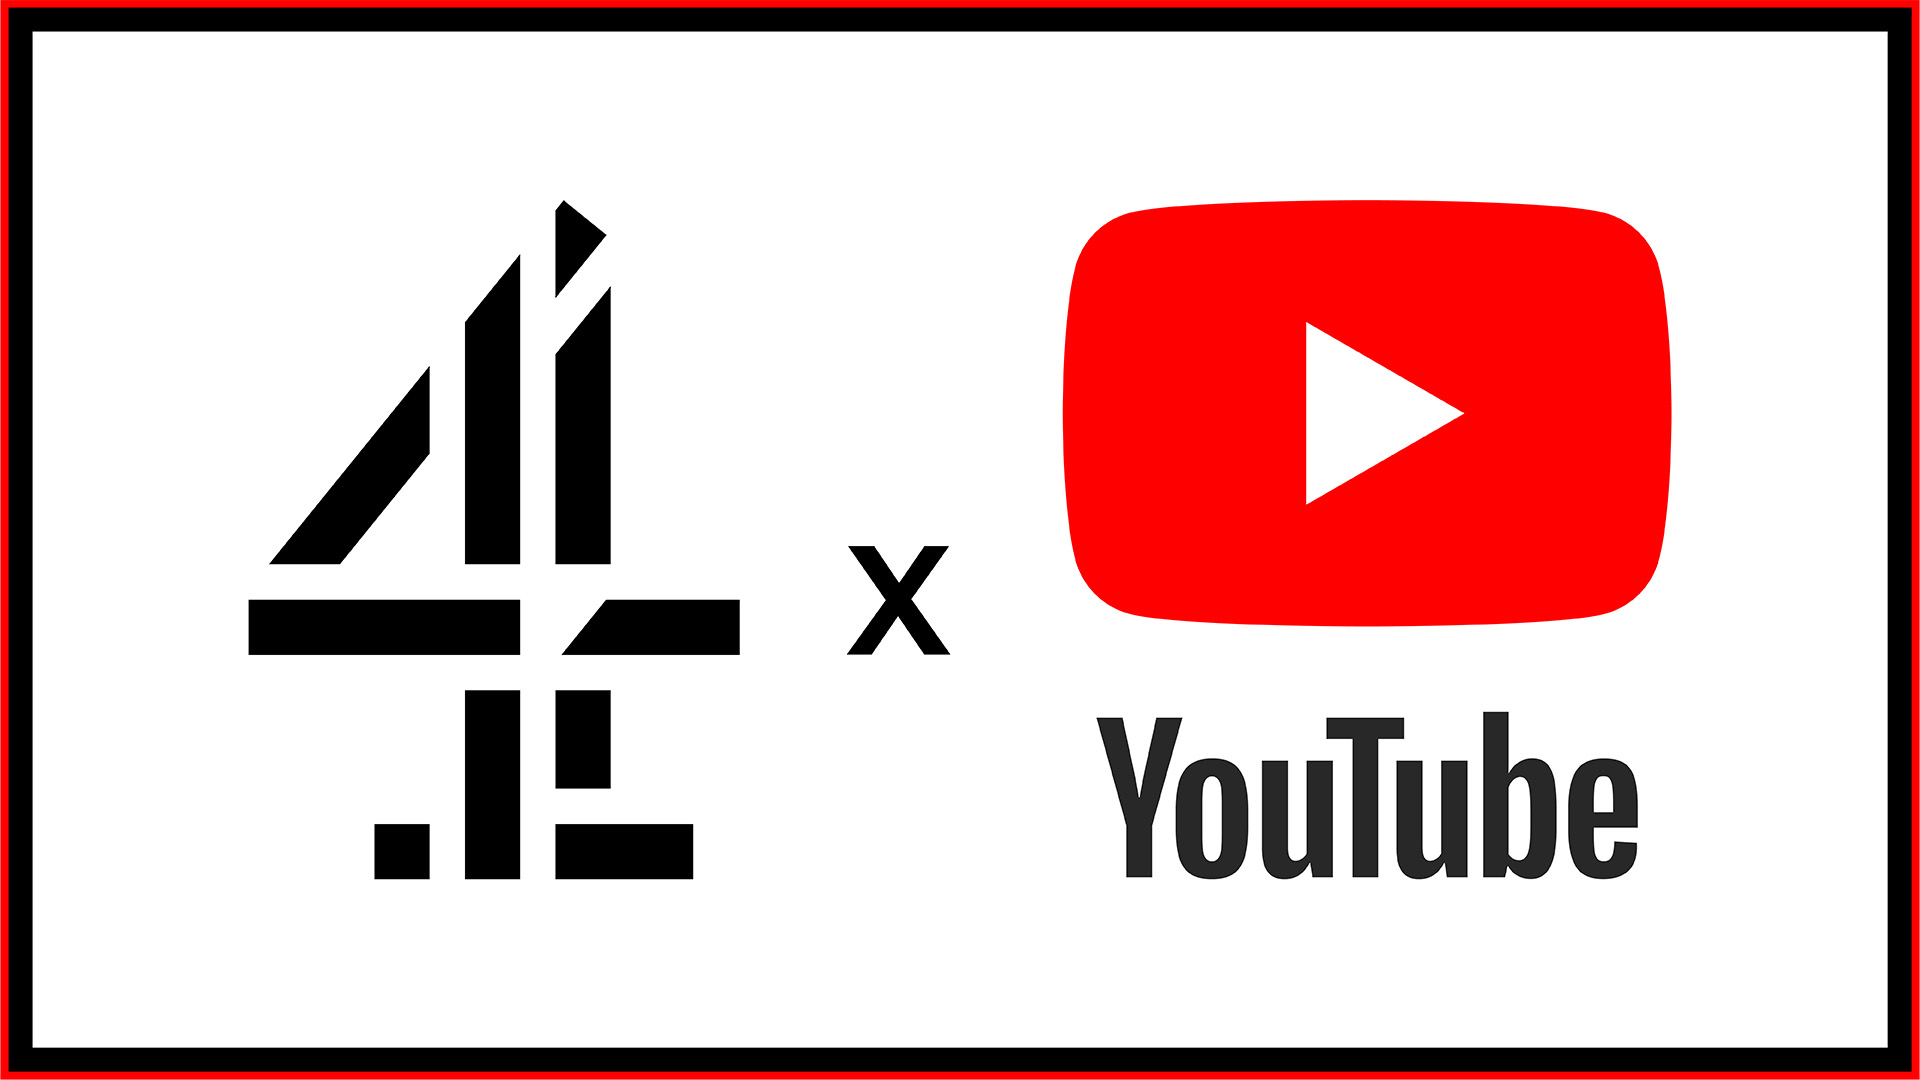 Youtube x C4 